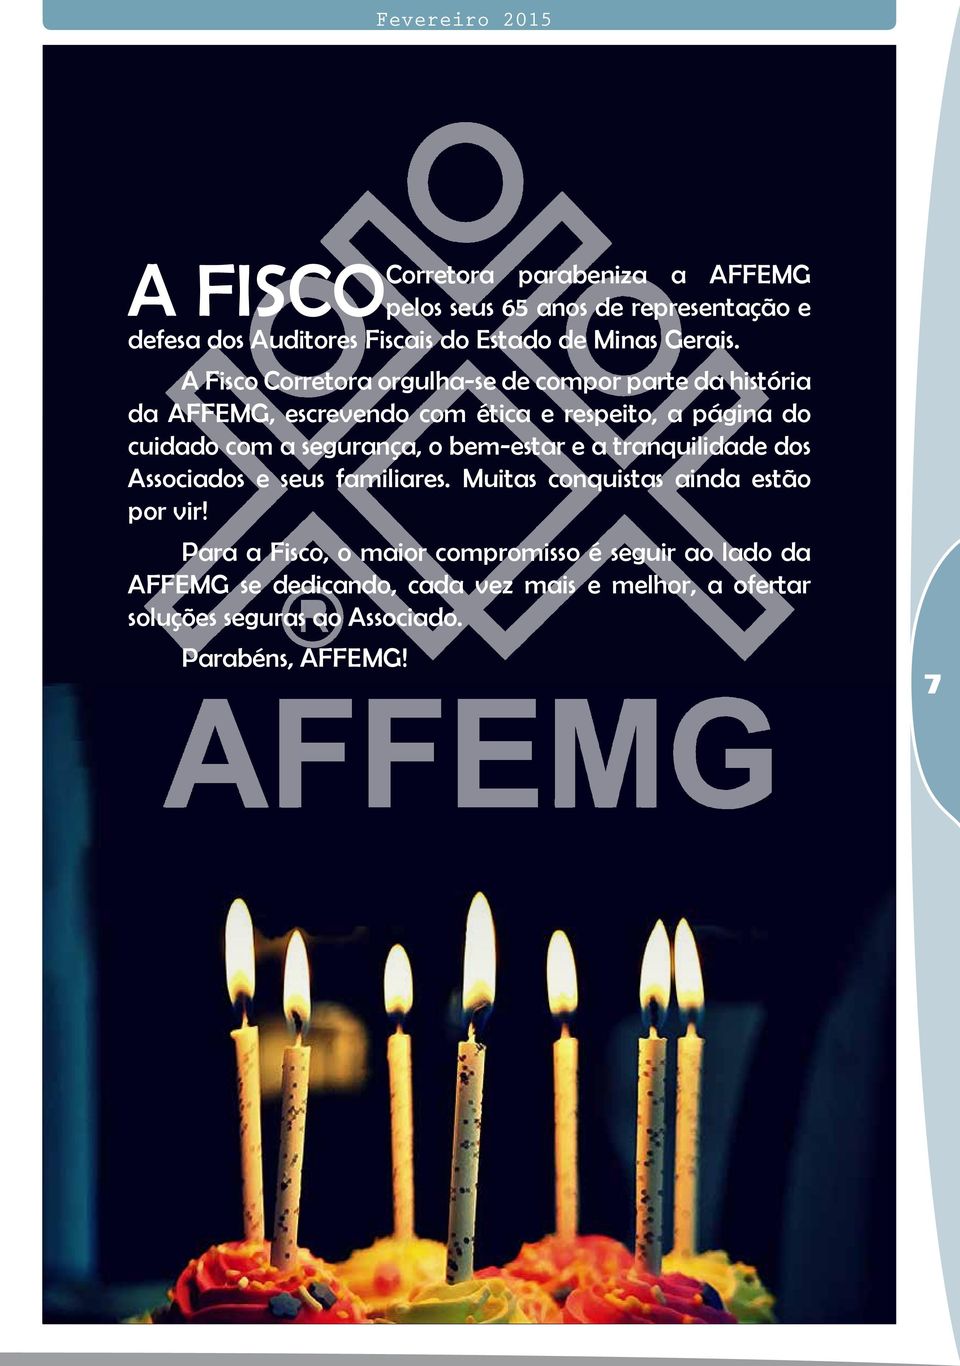 A Fisco Corretora orgulha-se de compor parte da história da AFFEMG, escrevendo com ética e respeito, a página do cuidado com a